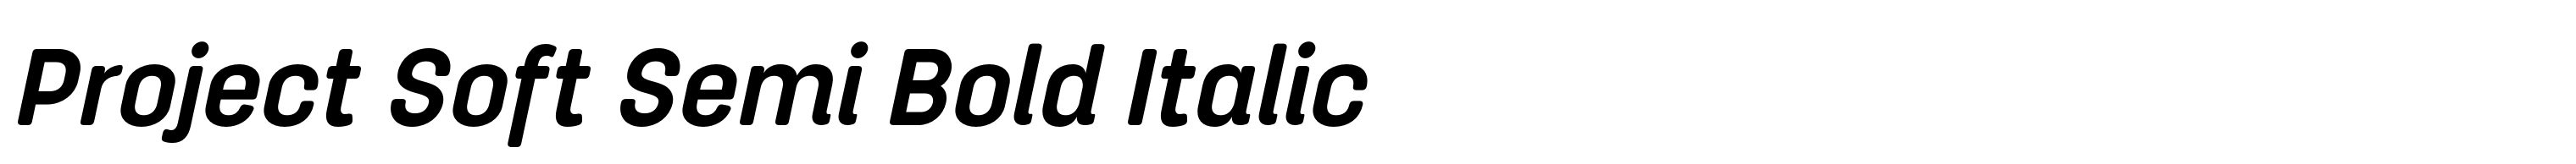 Project Soft Semi Bold Italic